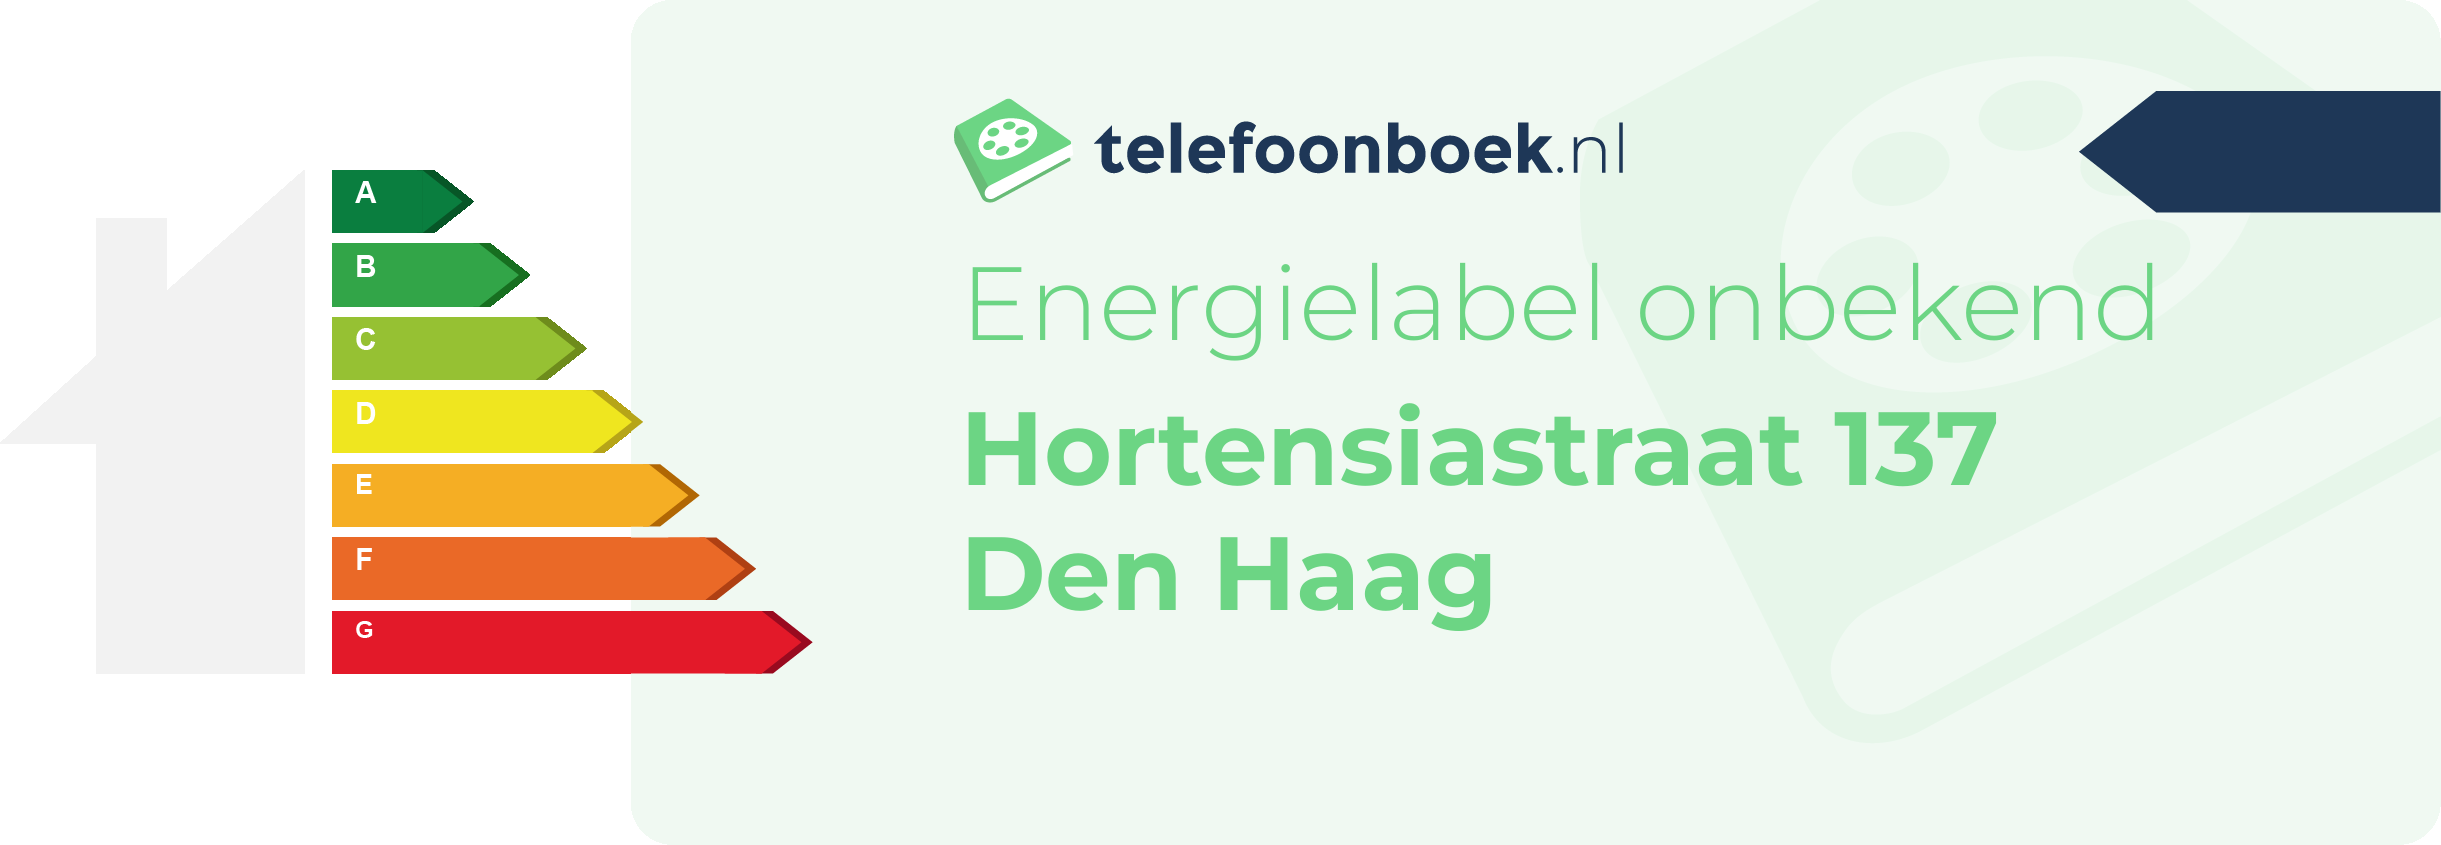 Energielabel Hortensiastraat 137 Den Haag